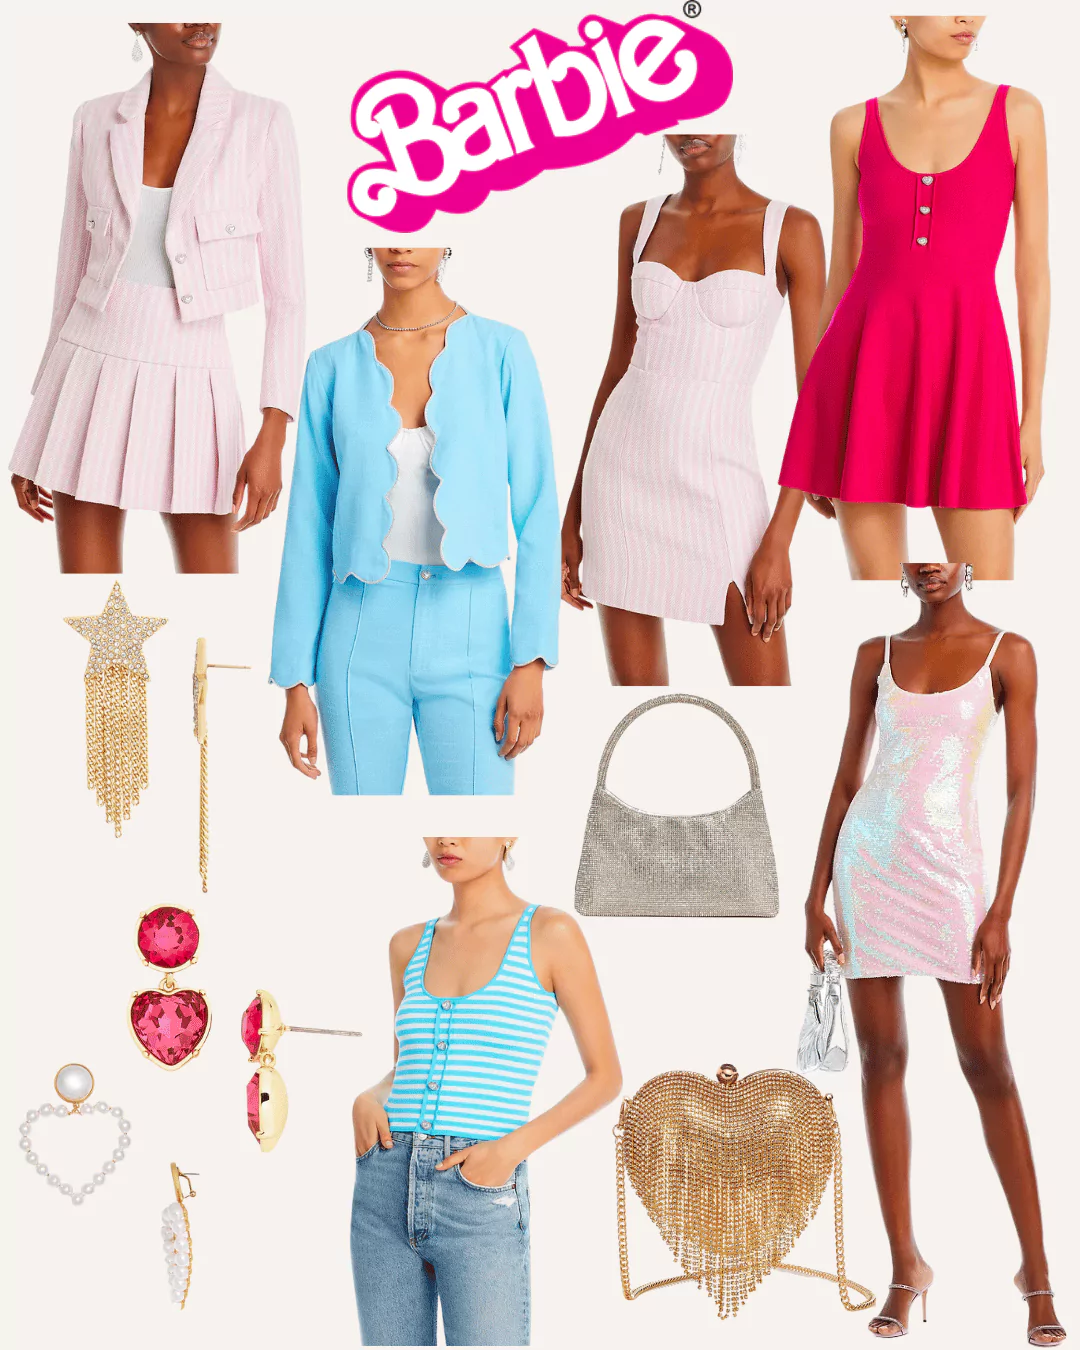 Barbie x Bloomingdales